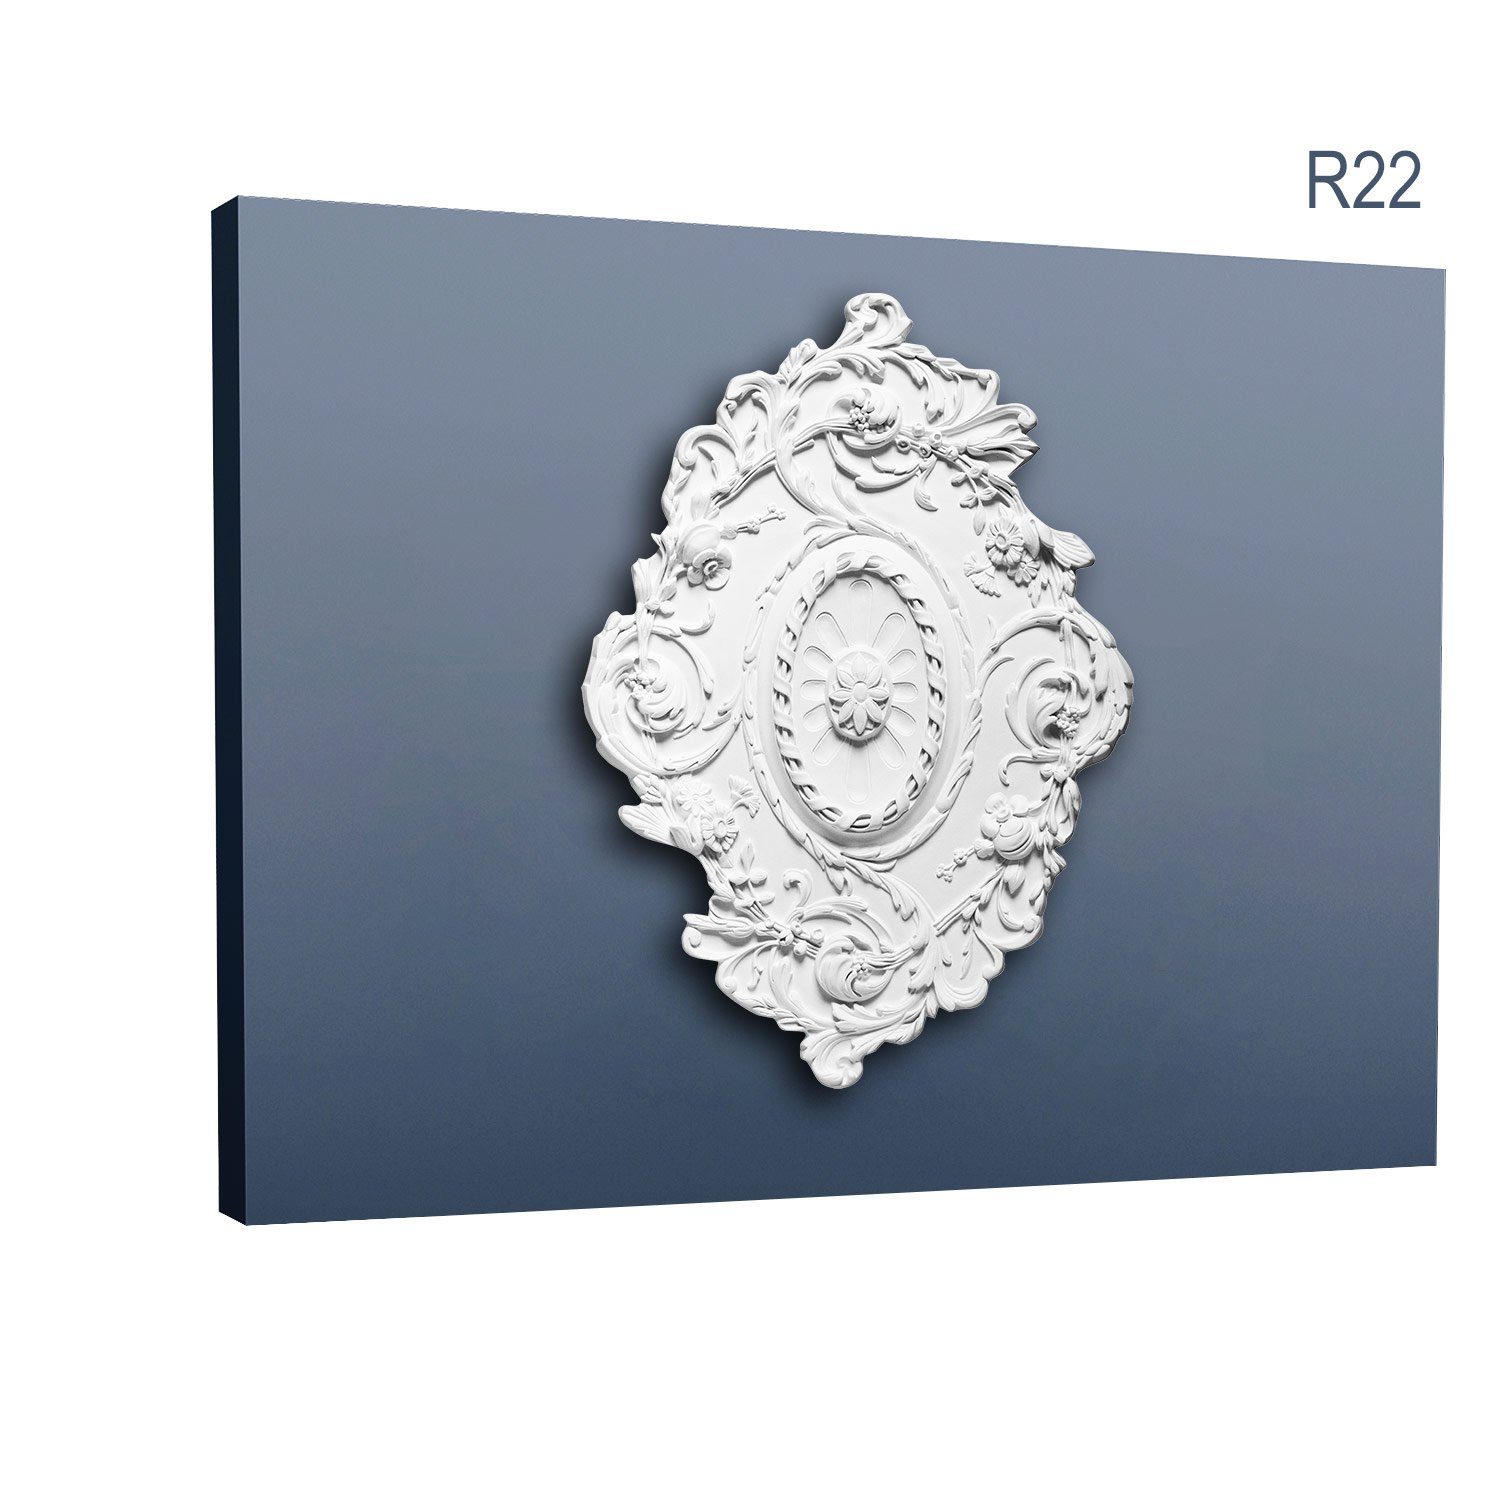 Orac Decor Decken-Rosette R22 (Rosette, 1 St., Deckenrosette, Medallion, Stuckrosette, Deckenelement, Zierelement, 77,5 x 53 cm), weiß, vorgrundiert, Stil: Jugendstil